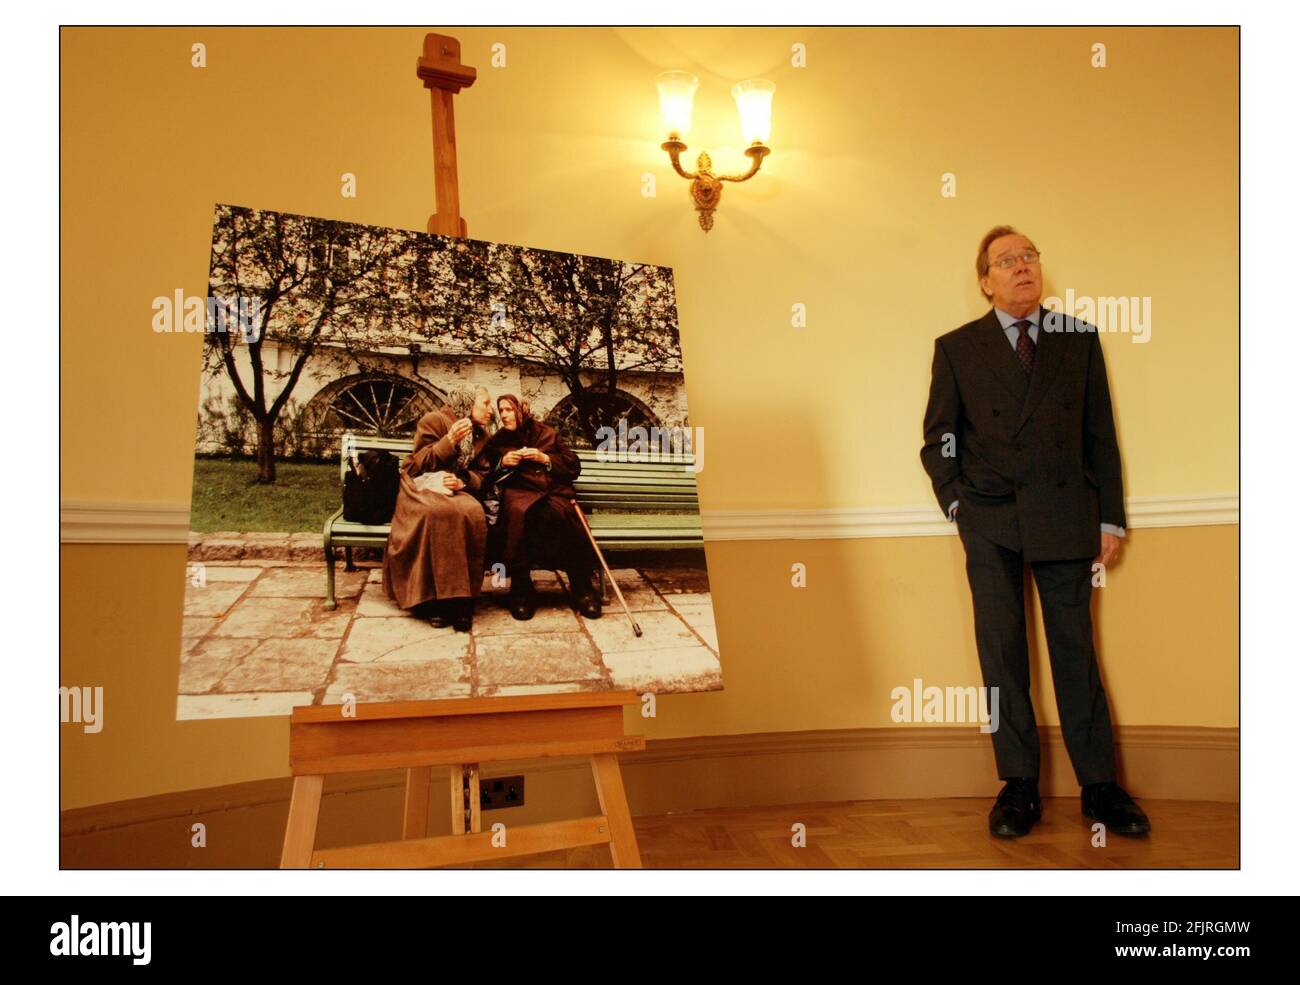 Lord Snowdon wird eine Ausstellung seiner Fotografien aus seinem neuen Buch im Somerset House im Zentrum Londons zeigen.Foto von David Sandison 10/12/2003 Stockfoto